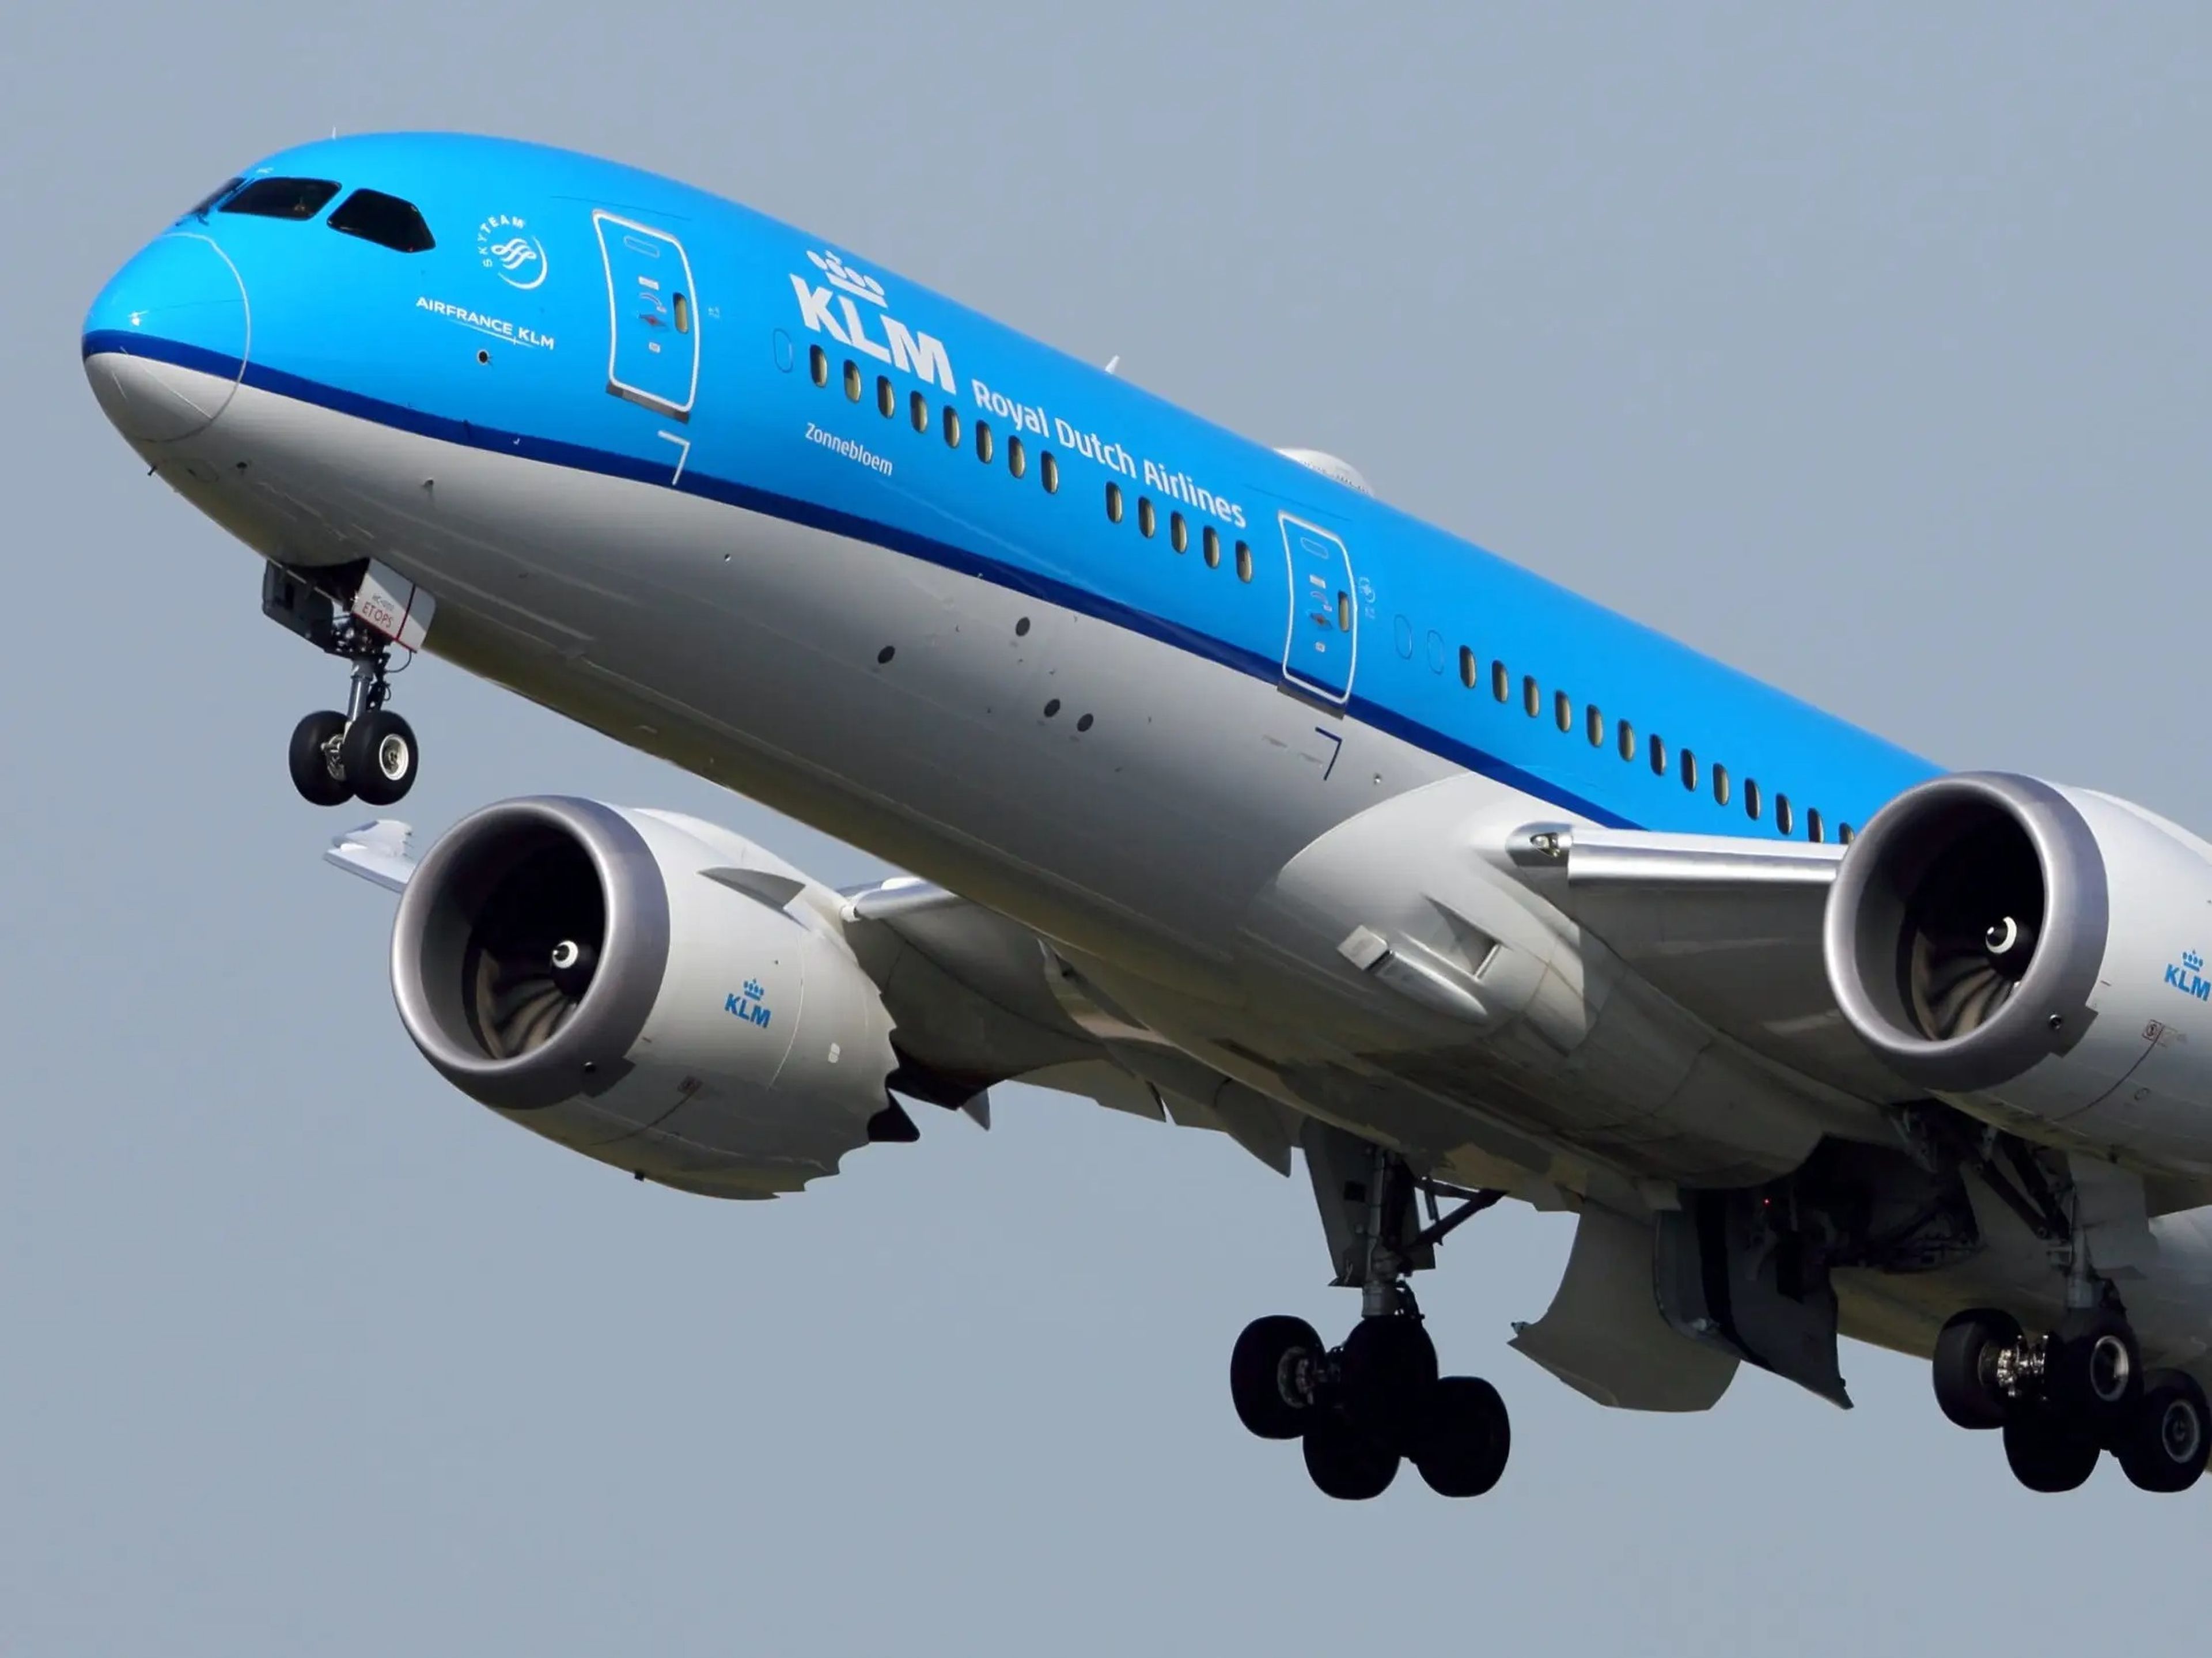 Otras compañías aéreas también tienen estas rutas. KLM Royal Dutch Airlines utiliza un Boeing 787 (como el de la foto) entre Ámsterdam y Santiago de Chile, vía Buenos Aires (Argentina).